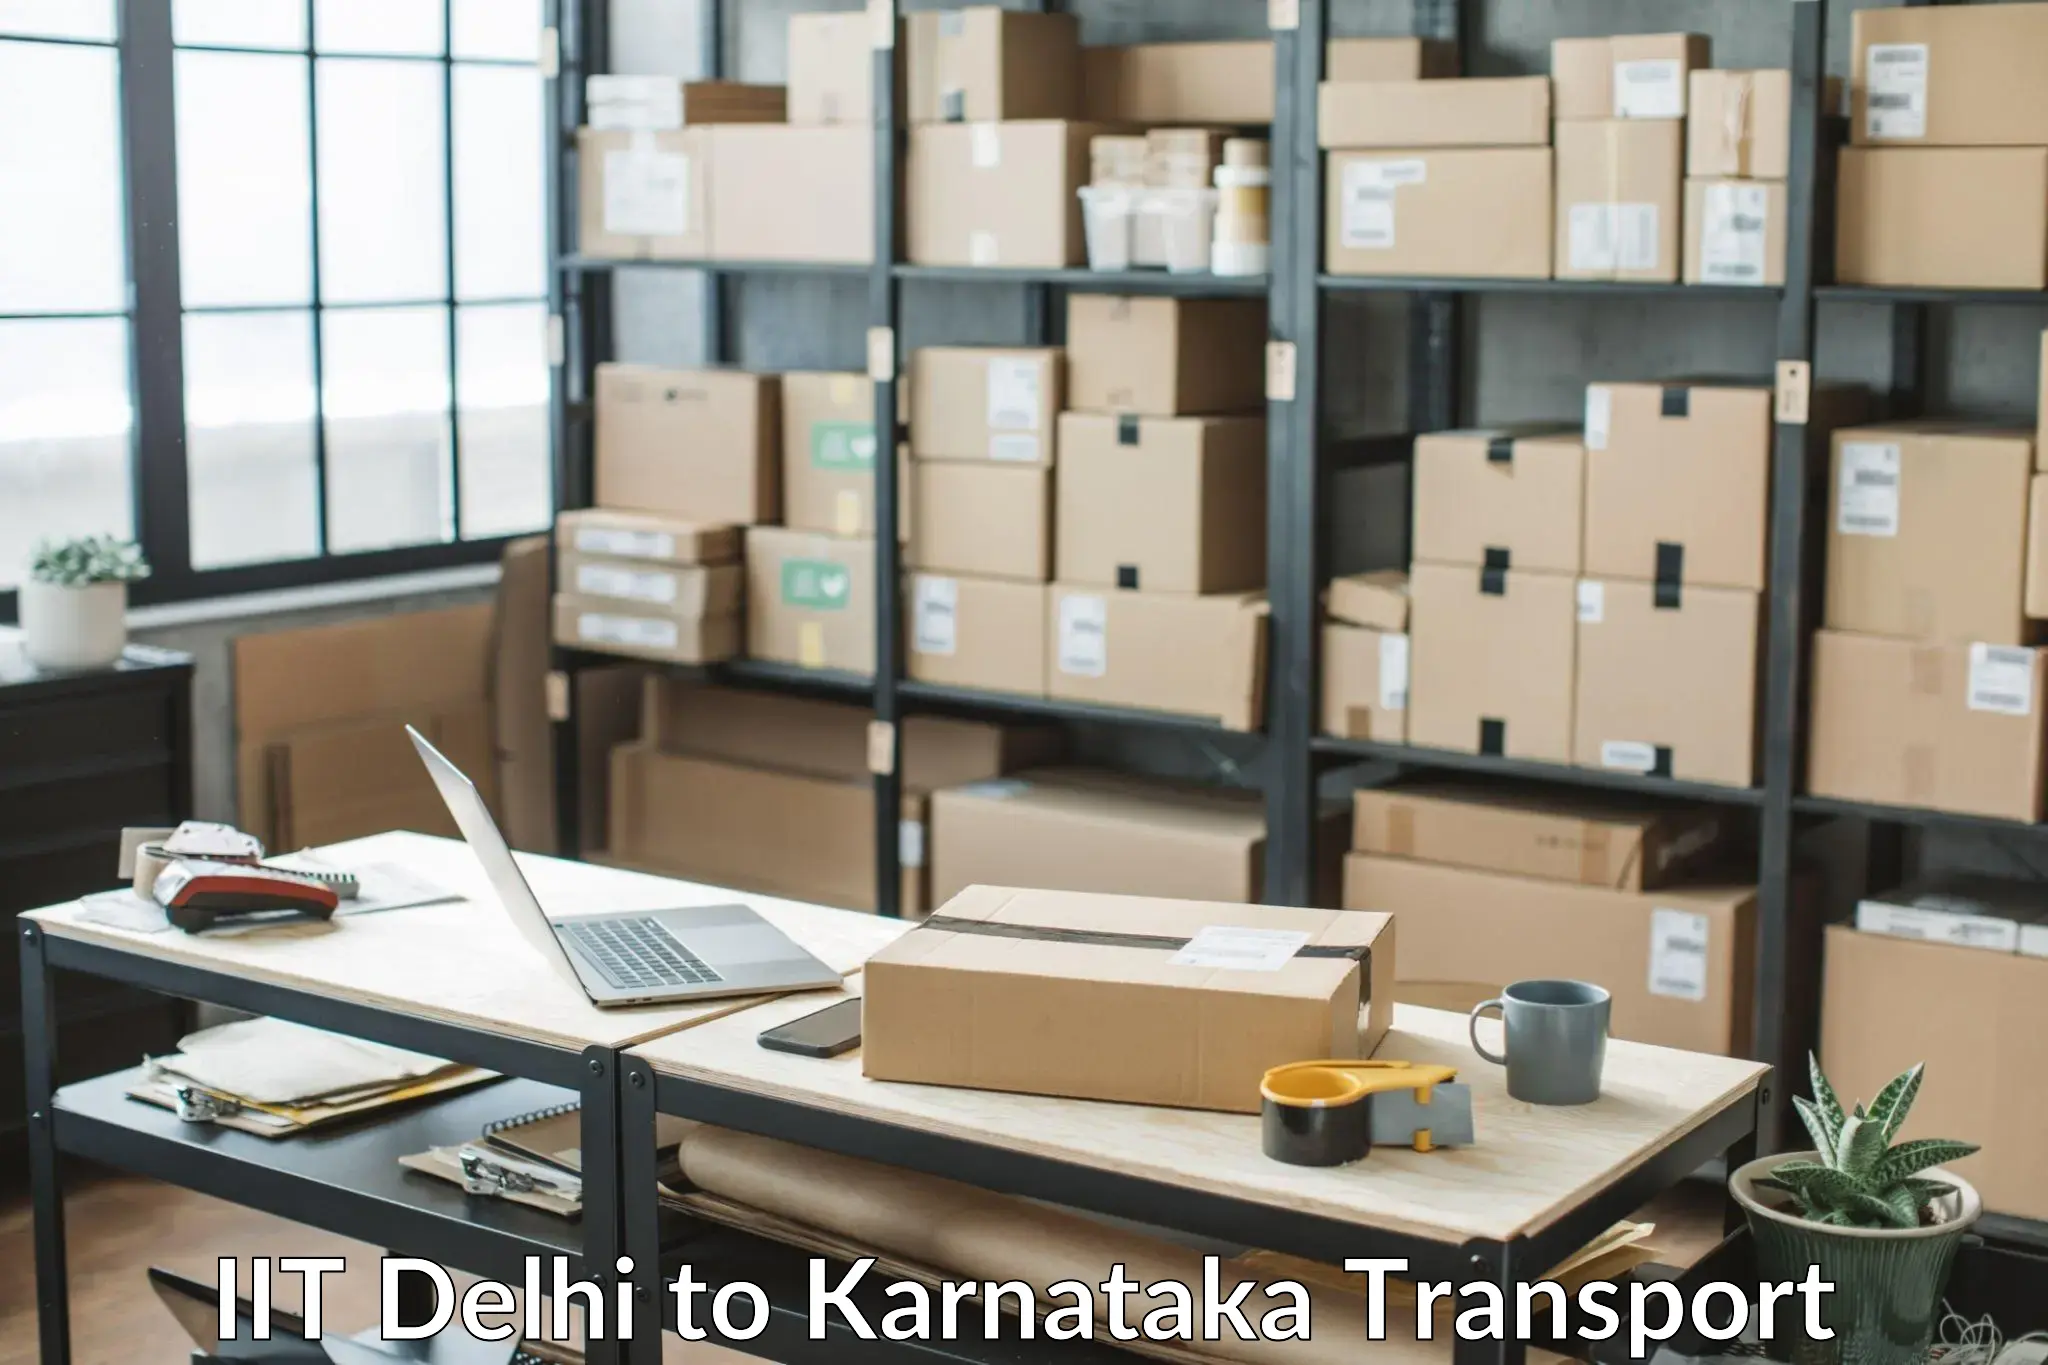 Goods delivery service IIT Delhi to Hukkeri